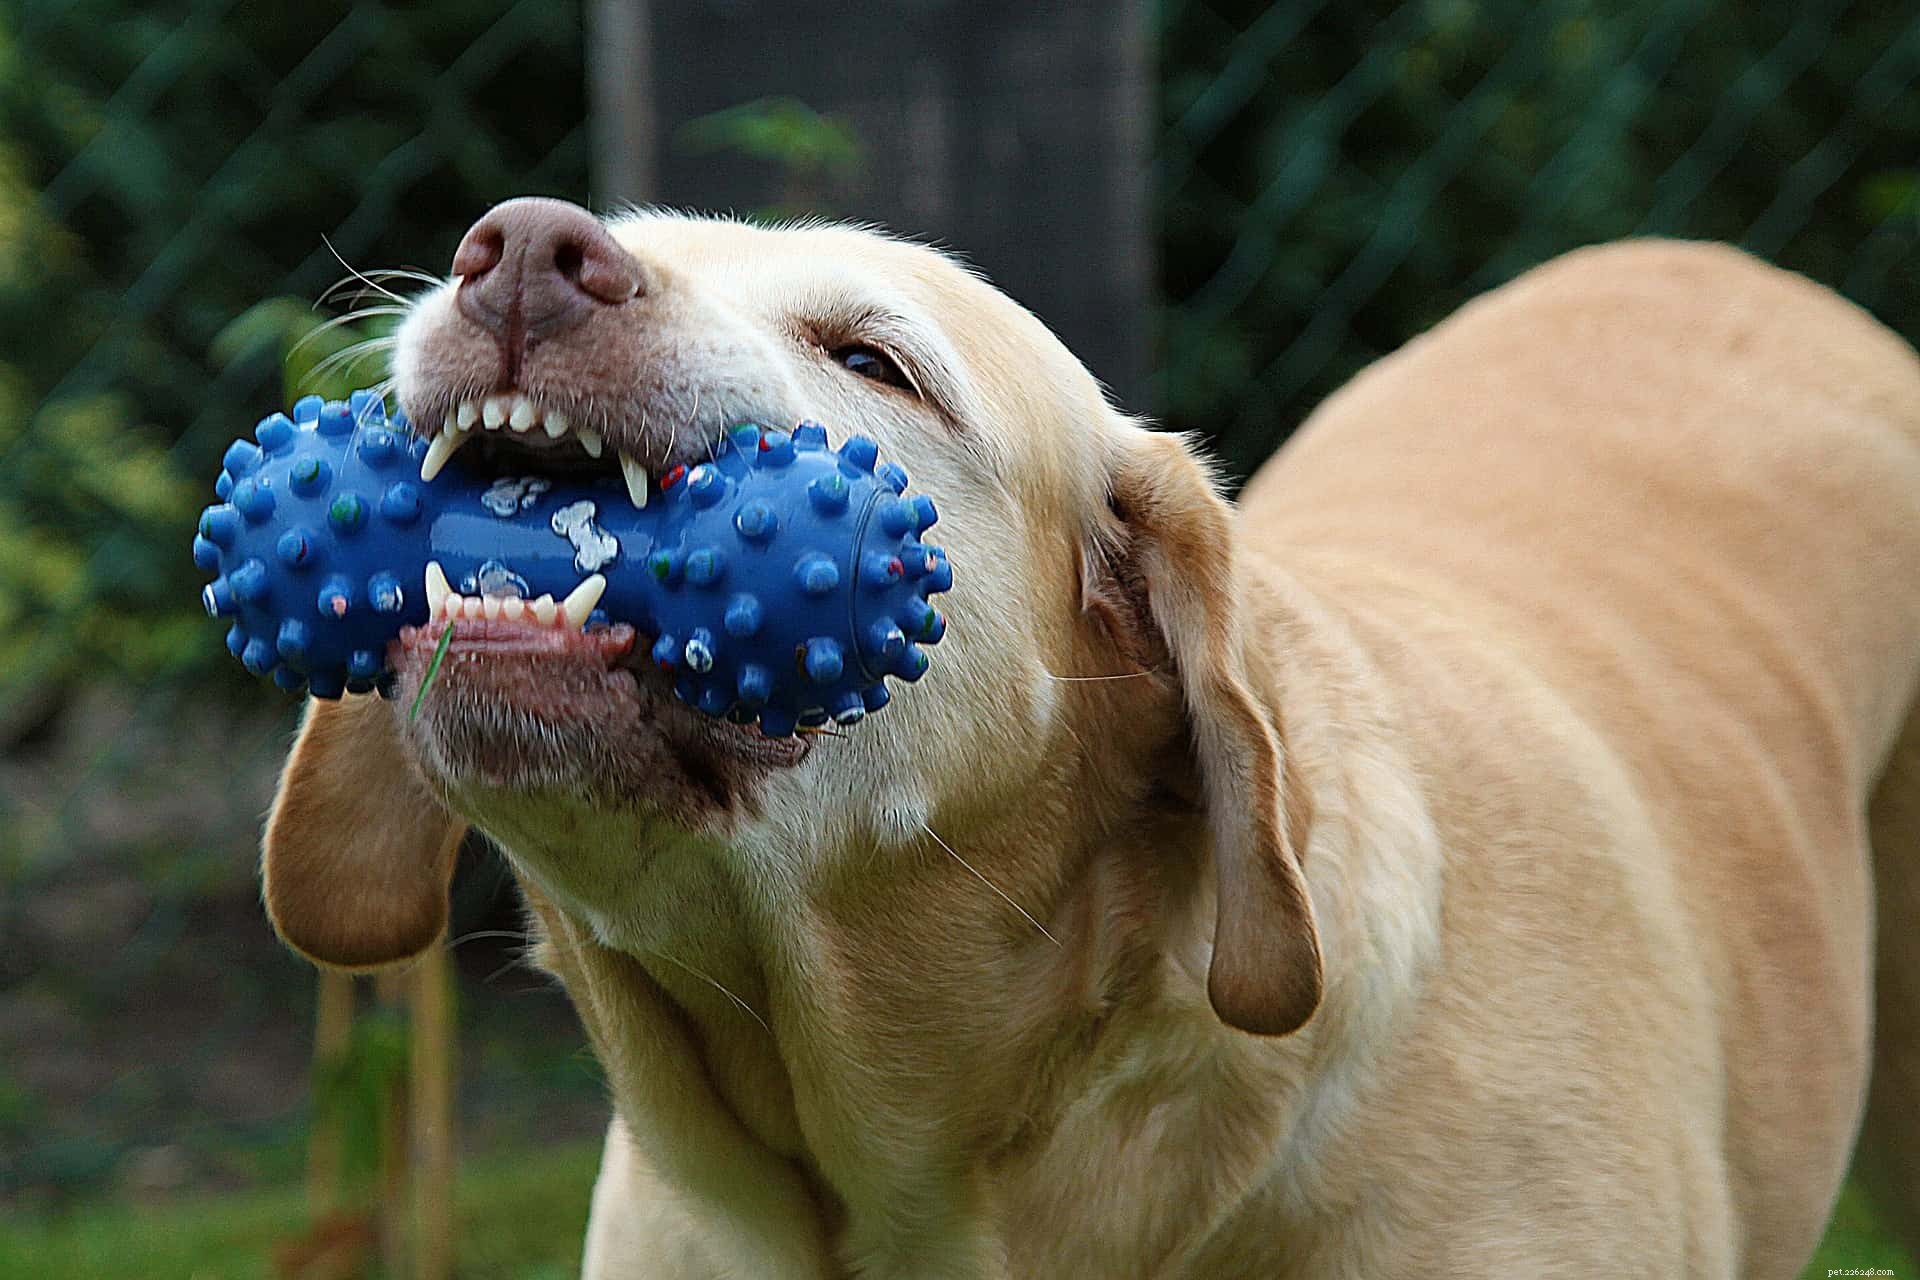 TRUQUE DO CÃO:ensine seu cão a limpar seus brinquedos